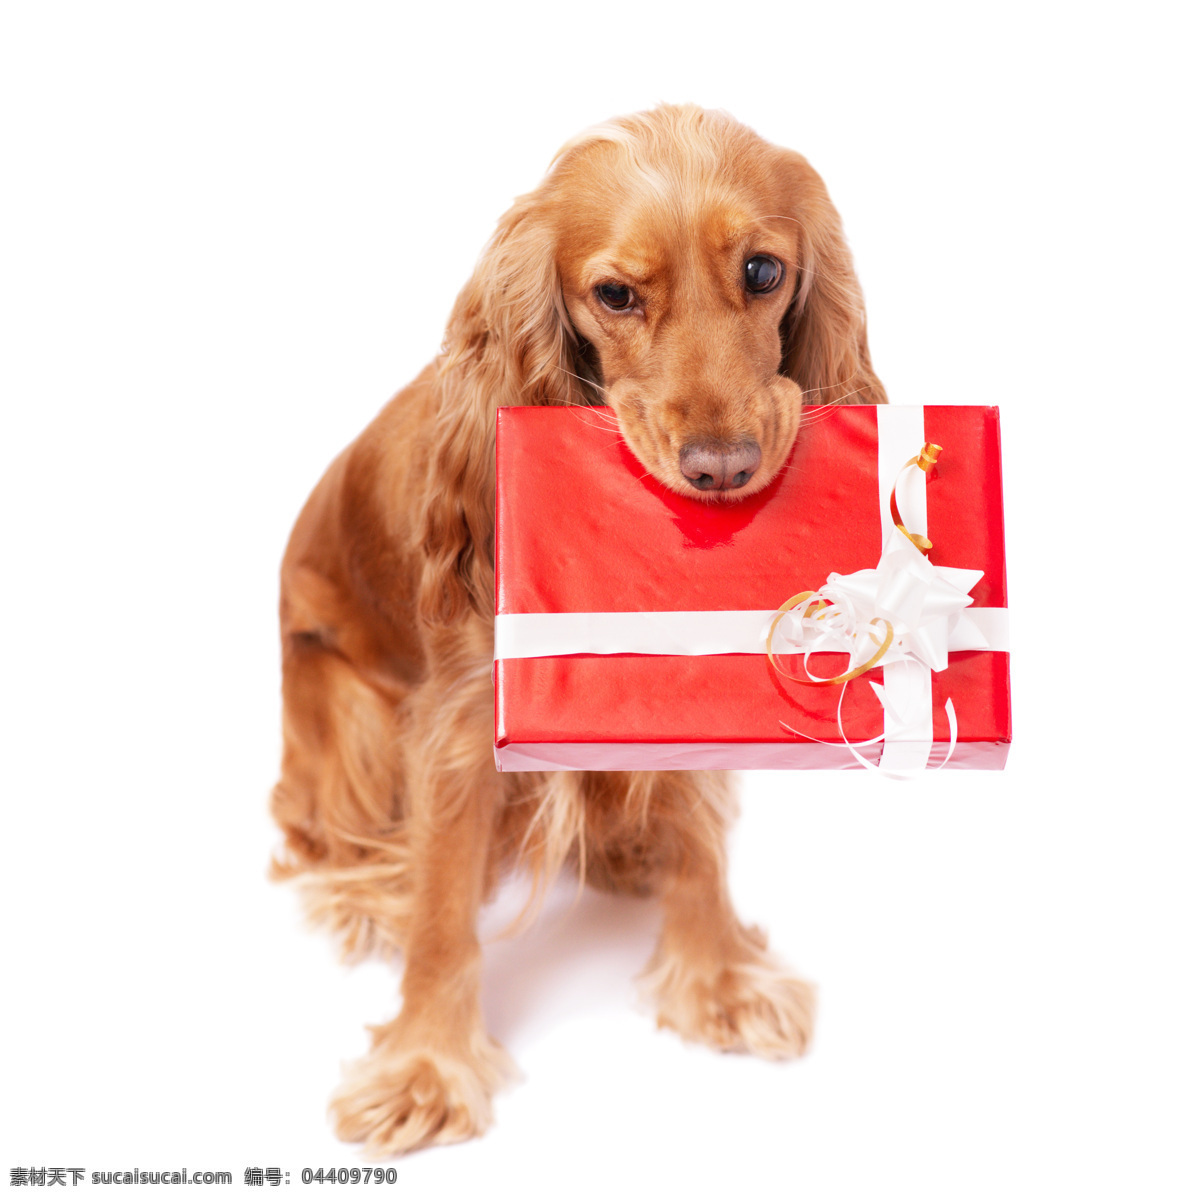 礼物盒与小狗 礼物盒 小狗 圣诞动物 动物 圣诞节 陆地动物 生物世界 白色